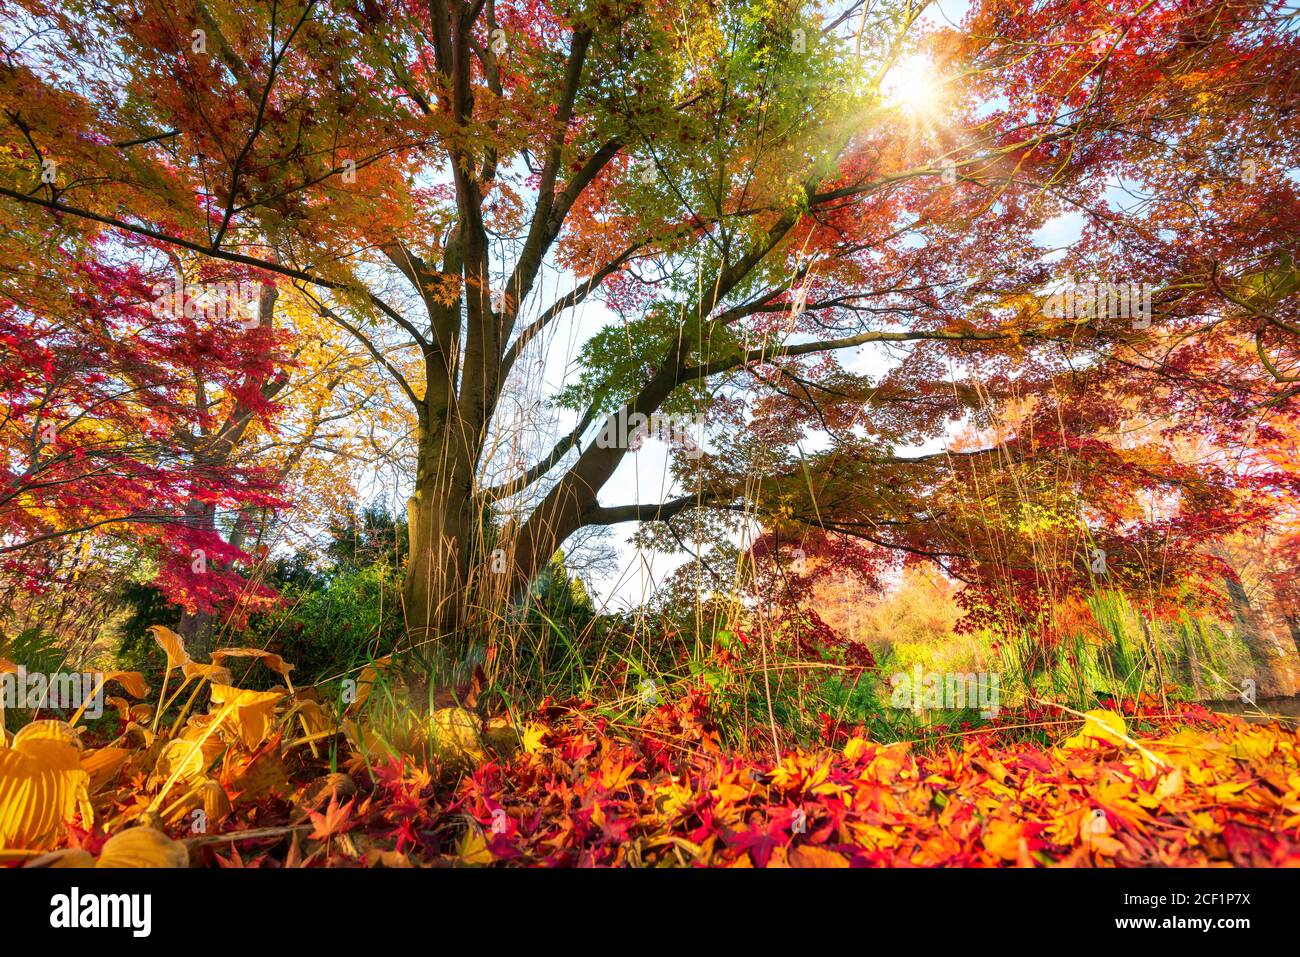 Splendidi colori autunnali in un parco, il sole splende attraverso i colorati rami di un albero fino al terreno coperto di fogliame Foto Stock